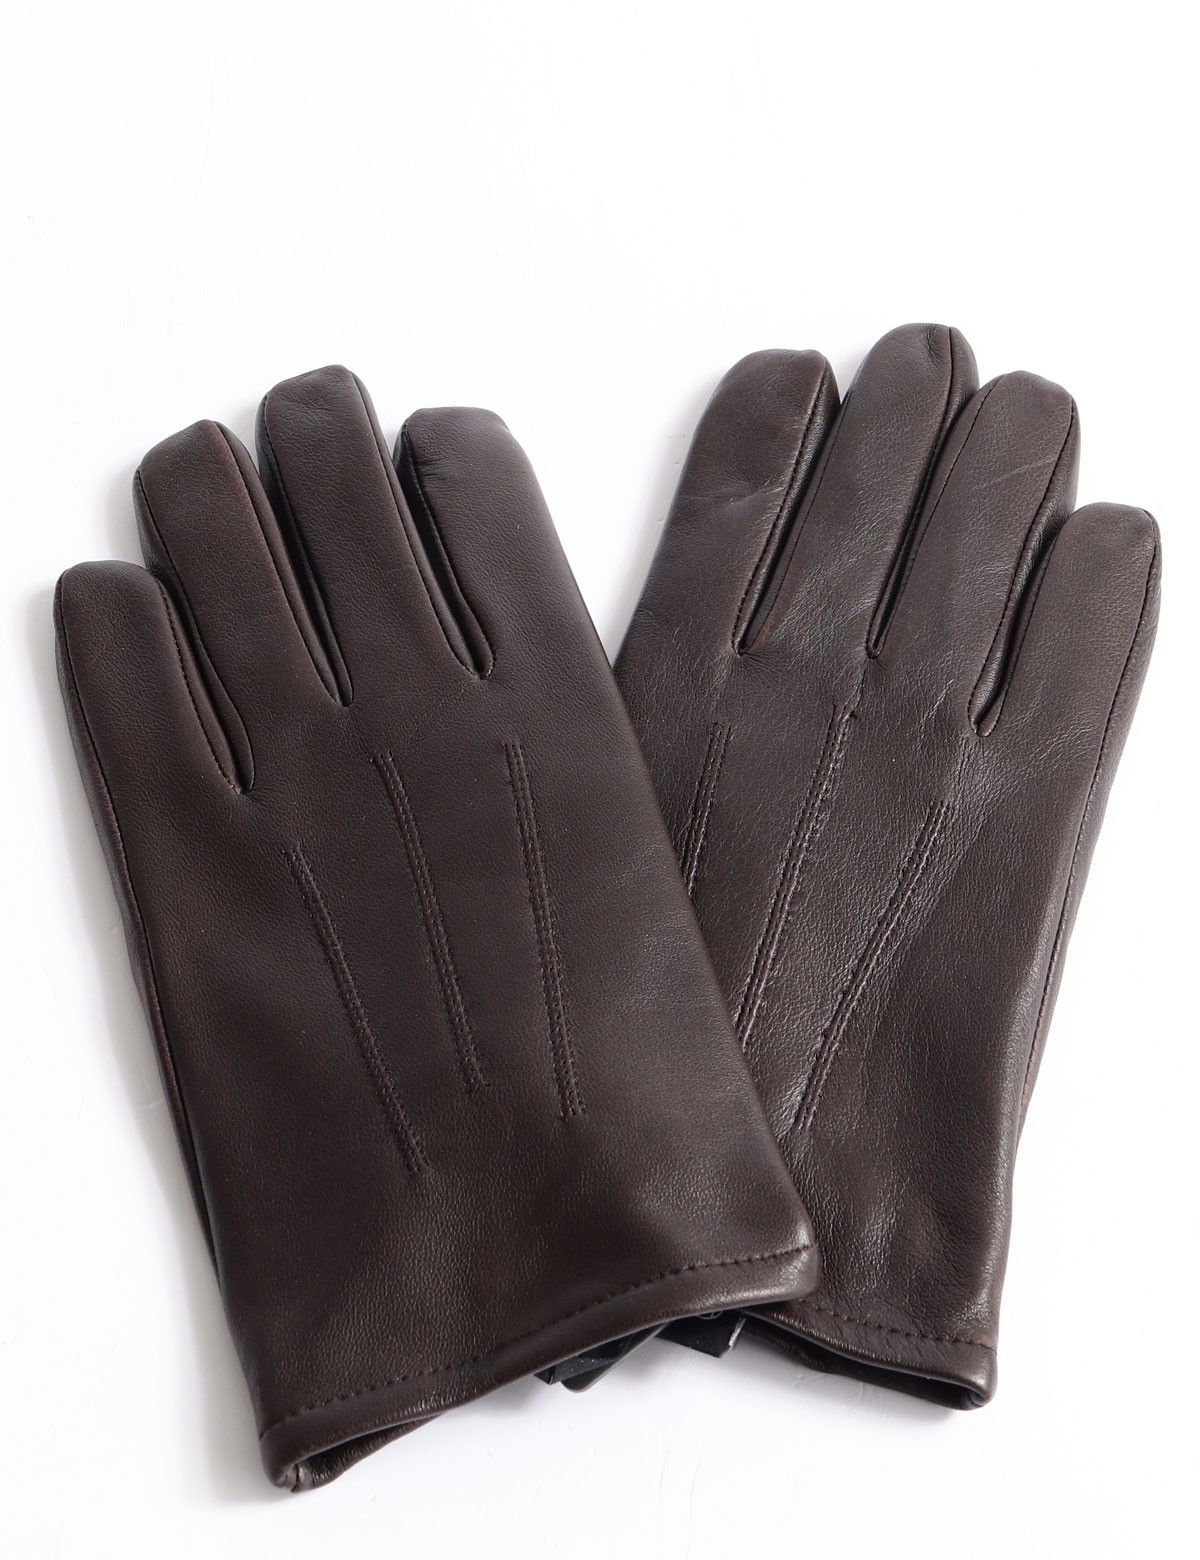 Kessler Liam touch gloves | Scalia Group | Handschuhe